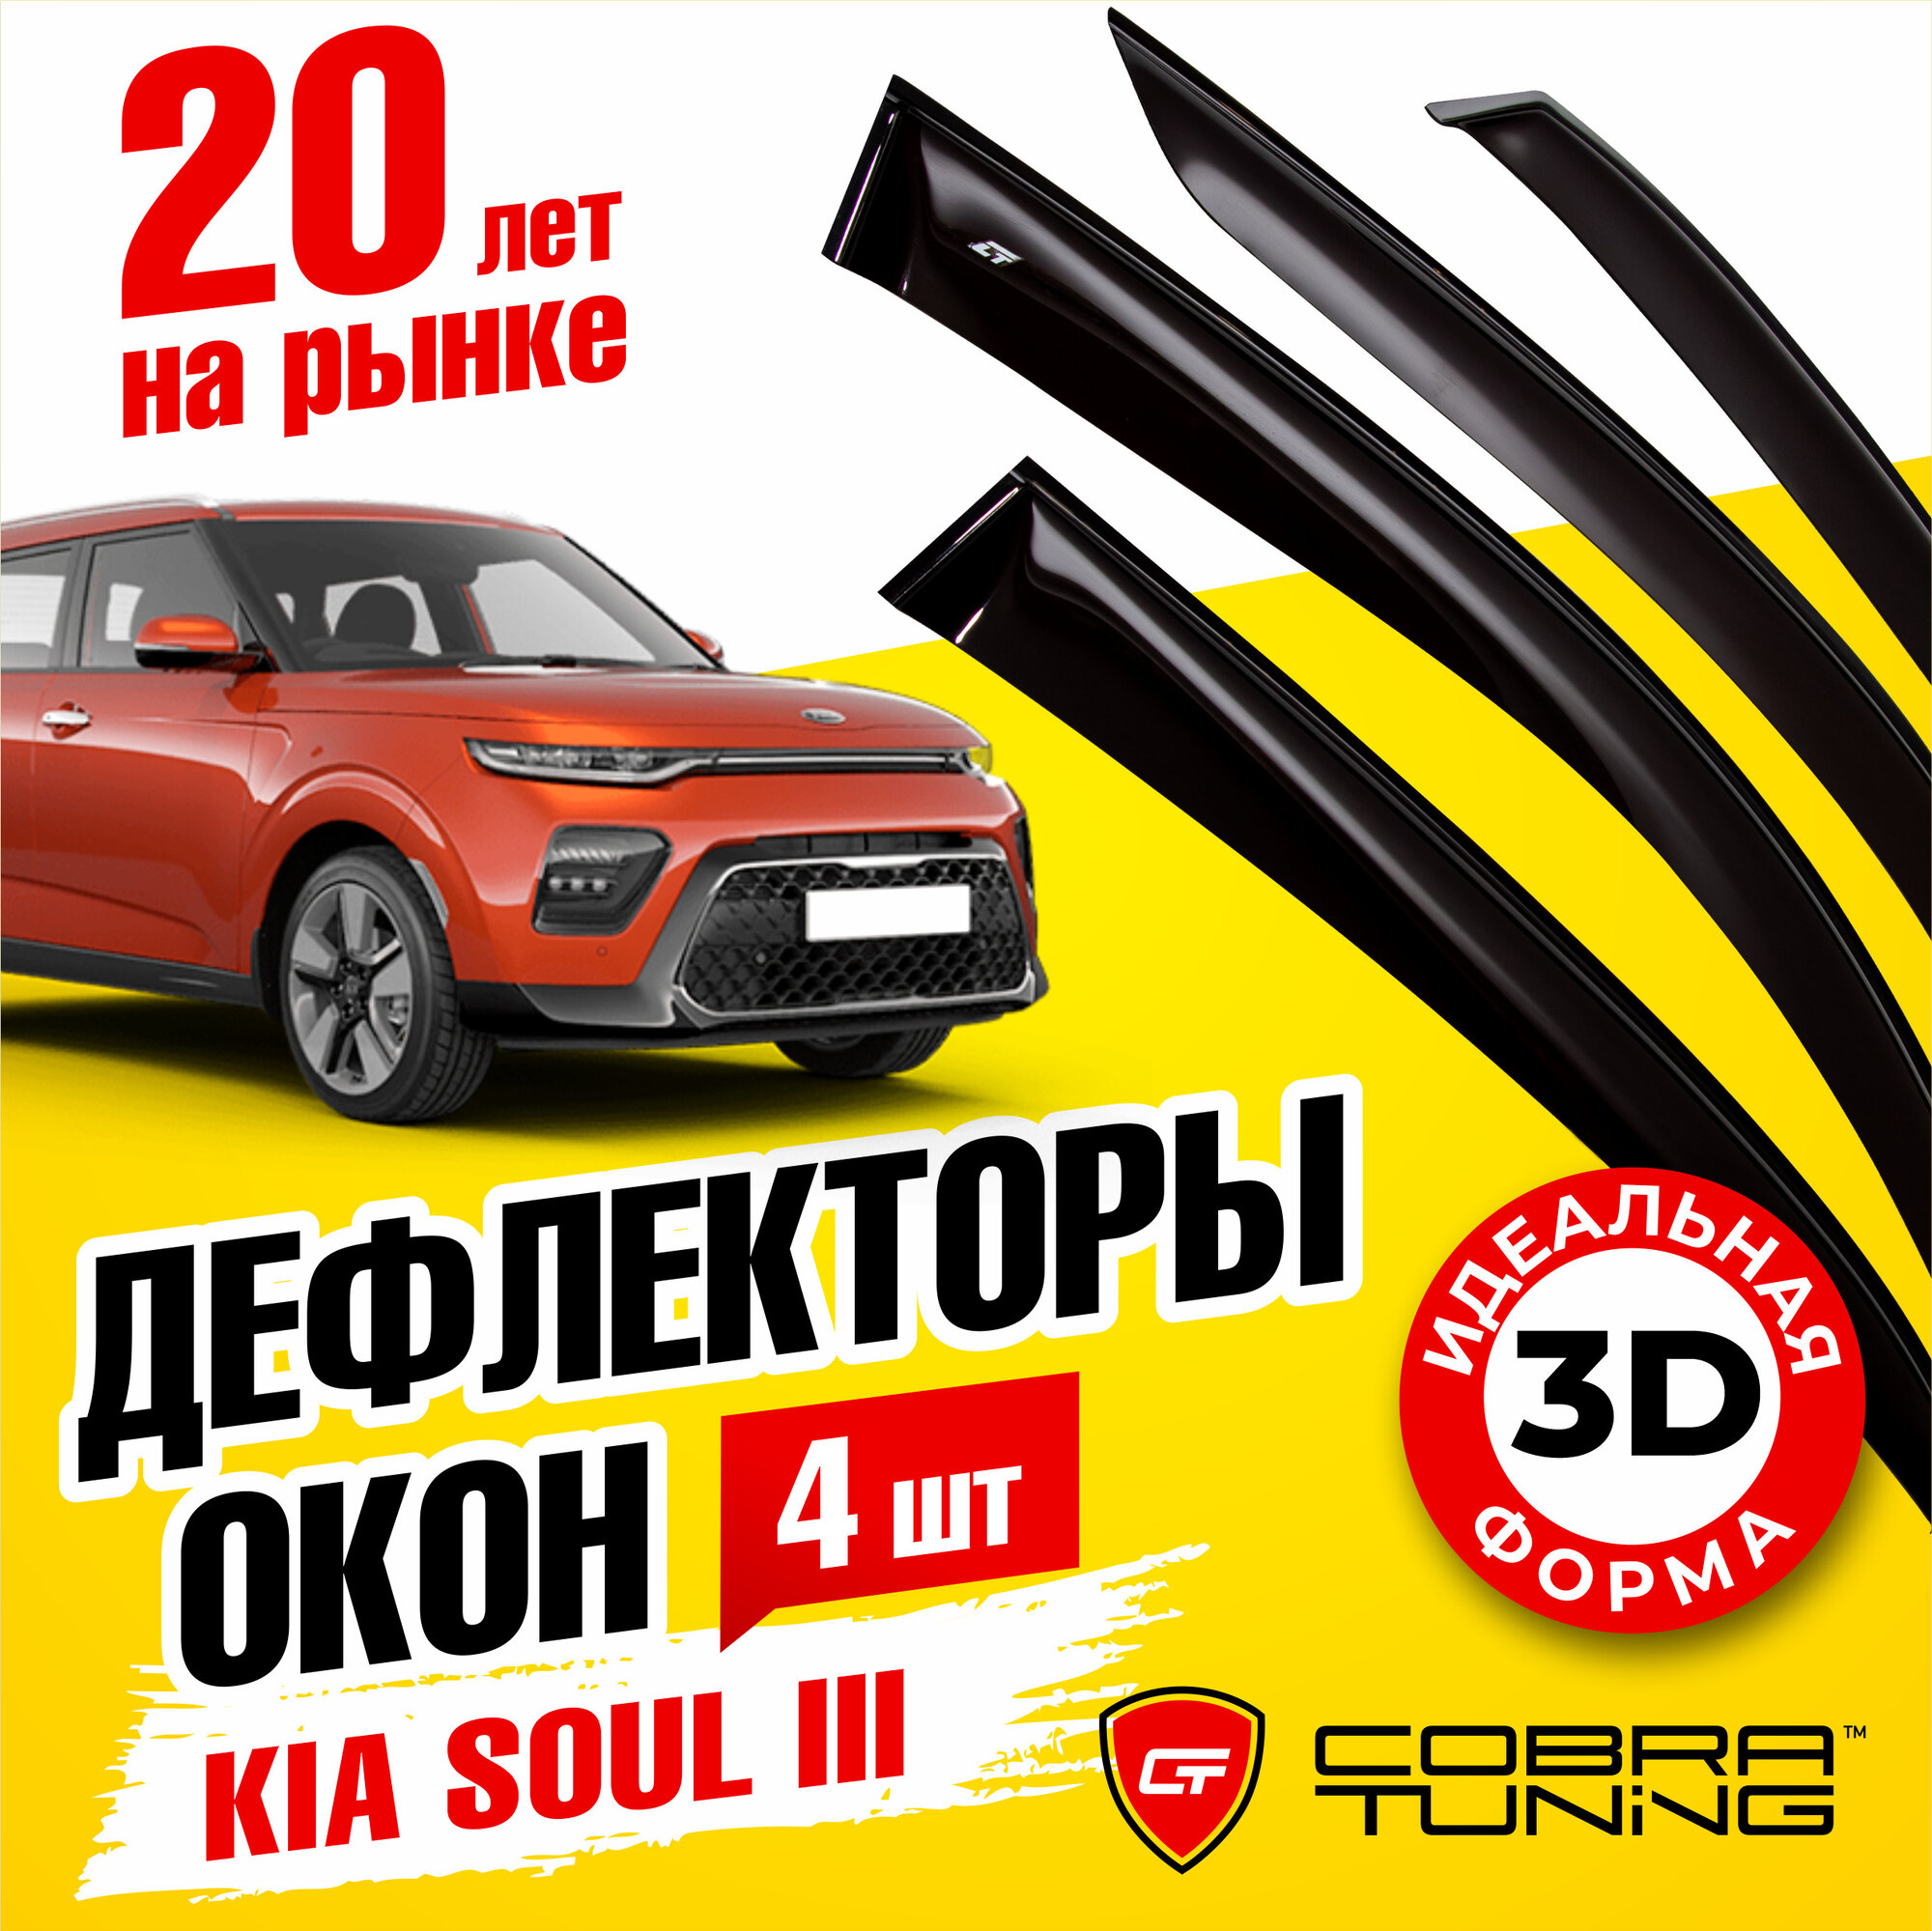 Дефлекторы боковых окон для Kia Soul (Киа Соул) (SK3) 2019-2022, ветровики на двери автомобиля, Cobra Tuning